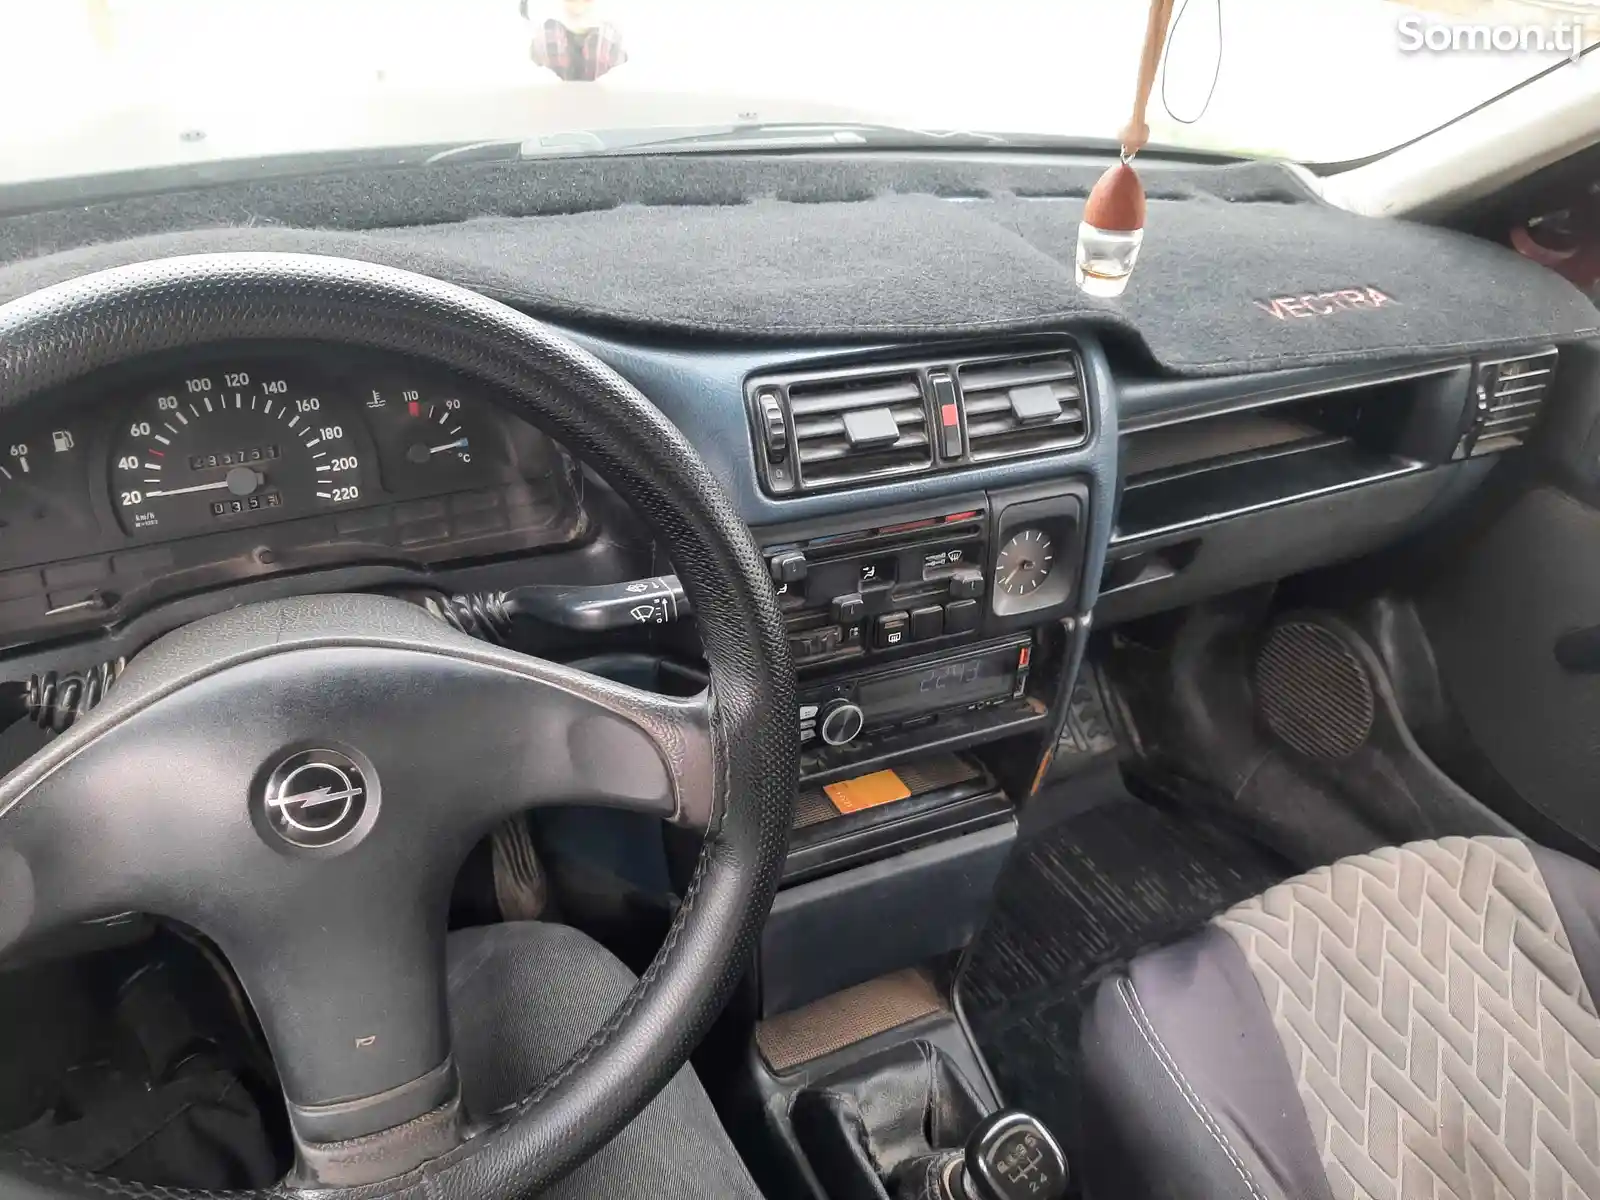 Opel Vectra C, 1995-1